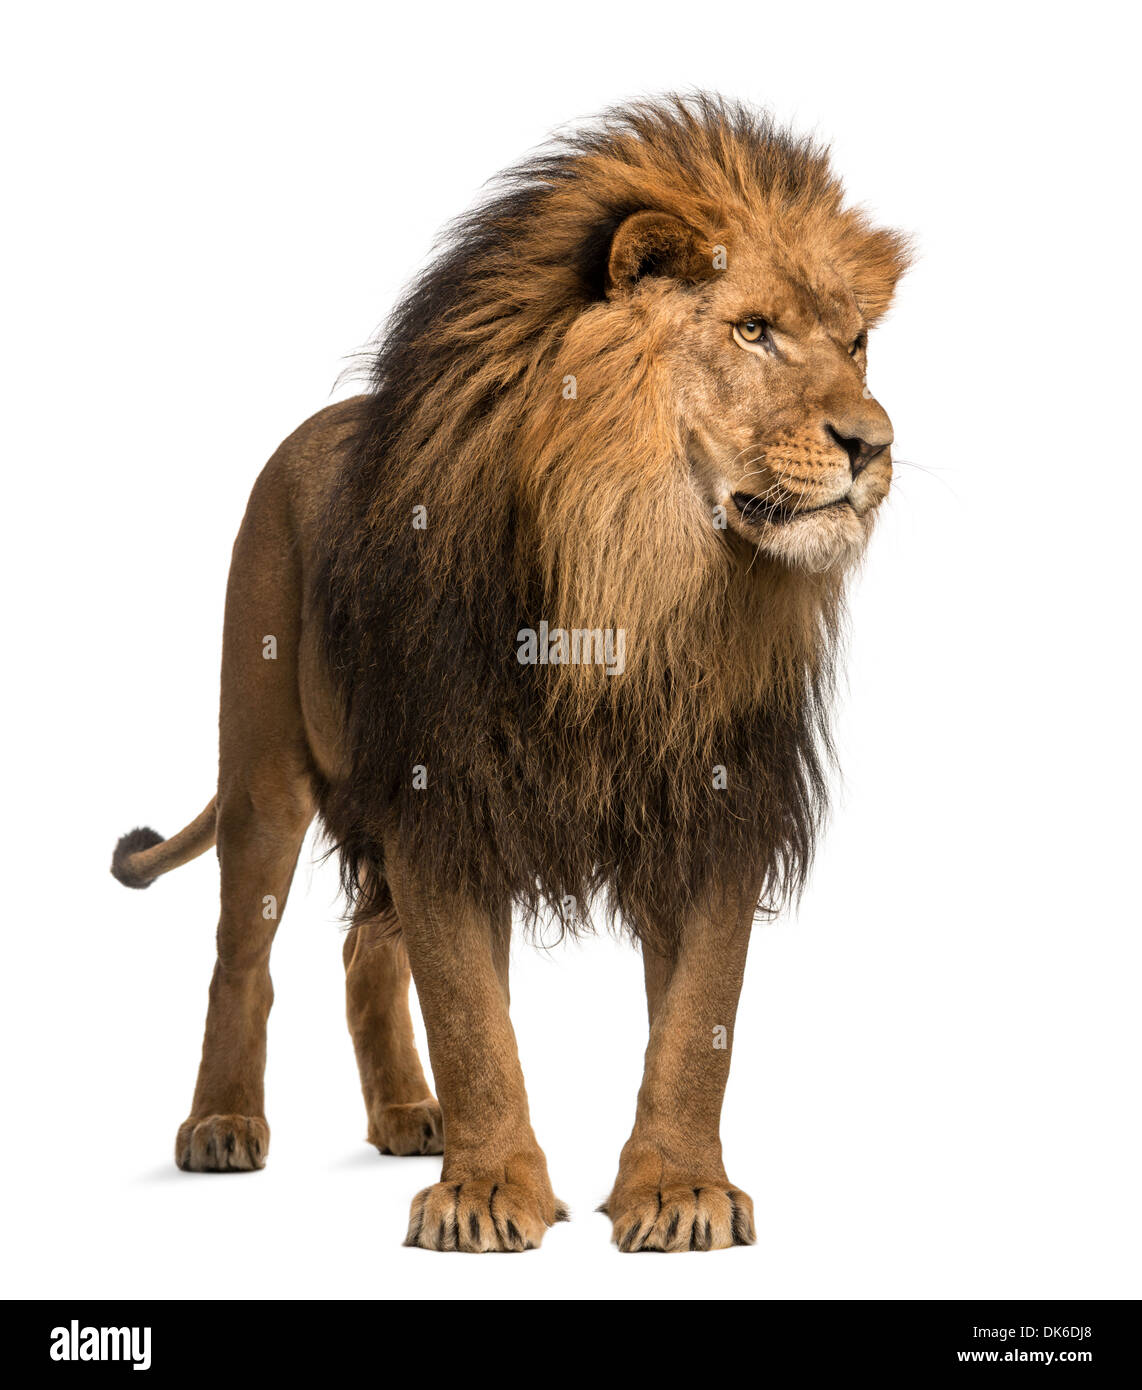 Lion debout, regardant ailleurs, Panthera leo, 10 ans, contre fond blanc Banque D'Images